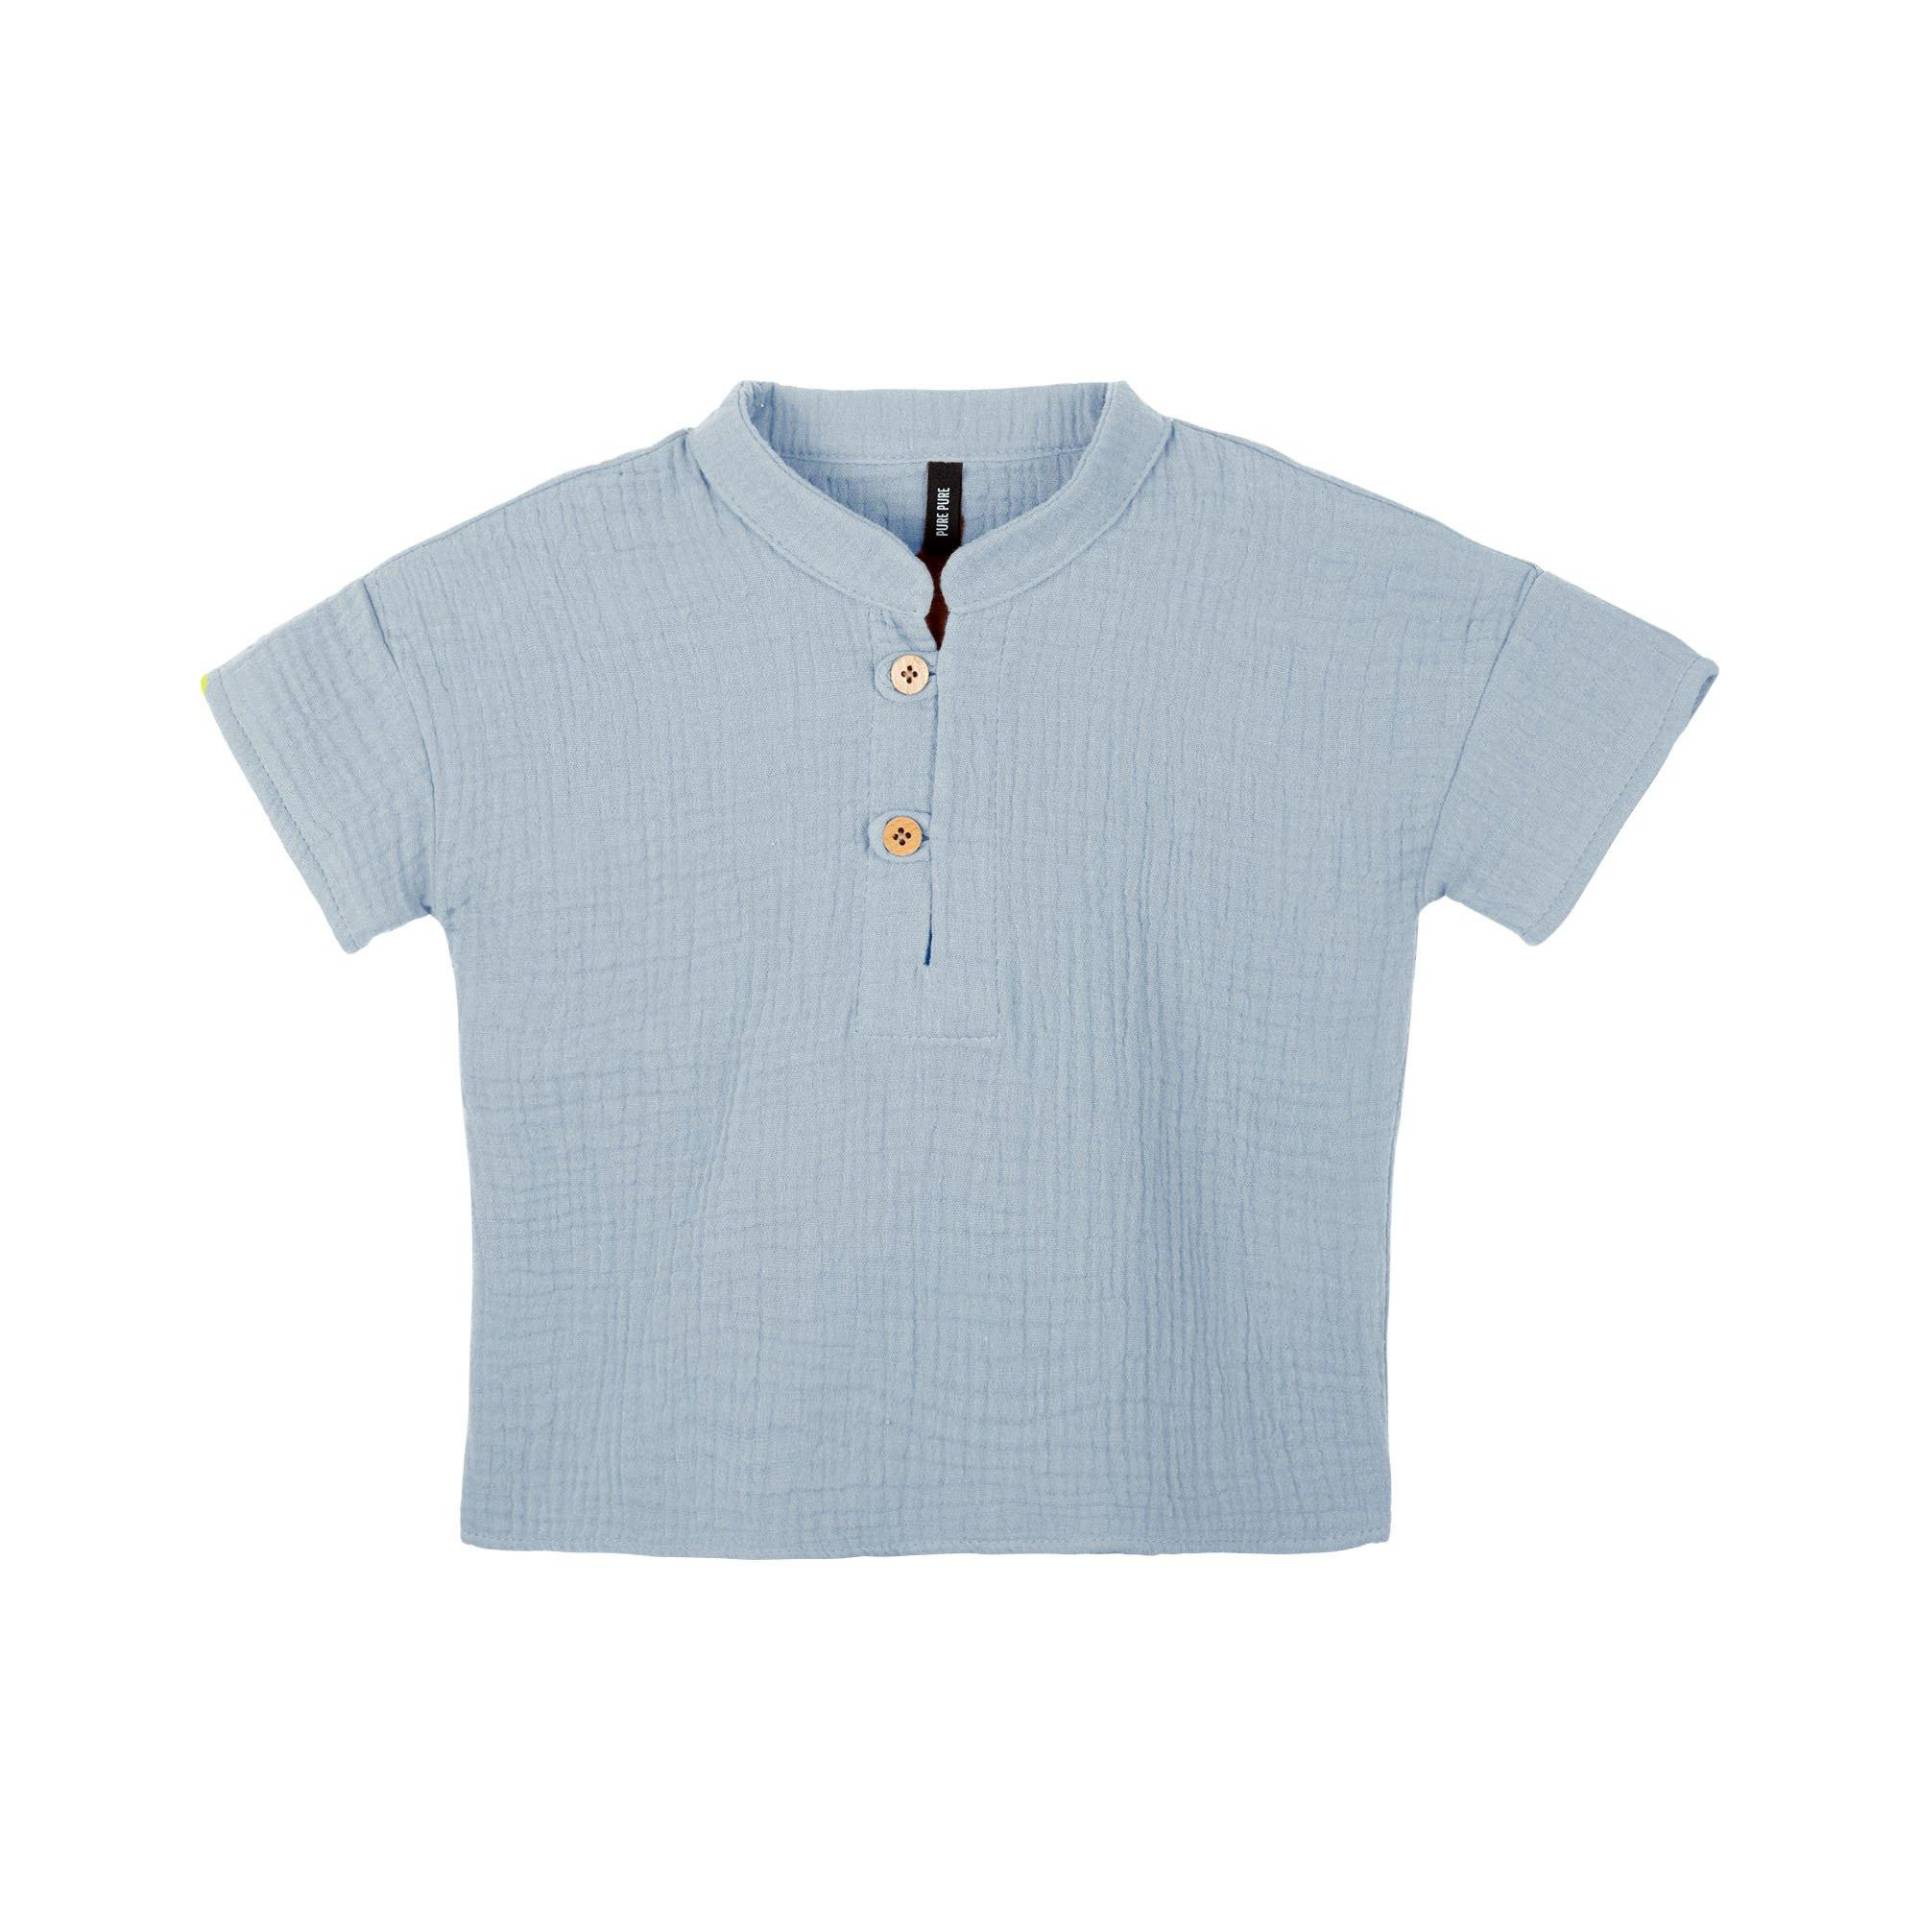 Kleinkinder T-shirt Light-blue Jungen Blau 110 von Pure Pure